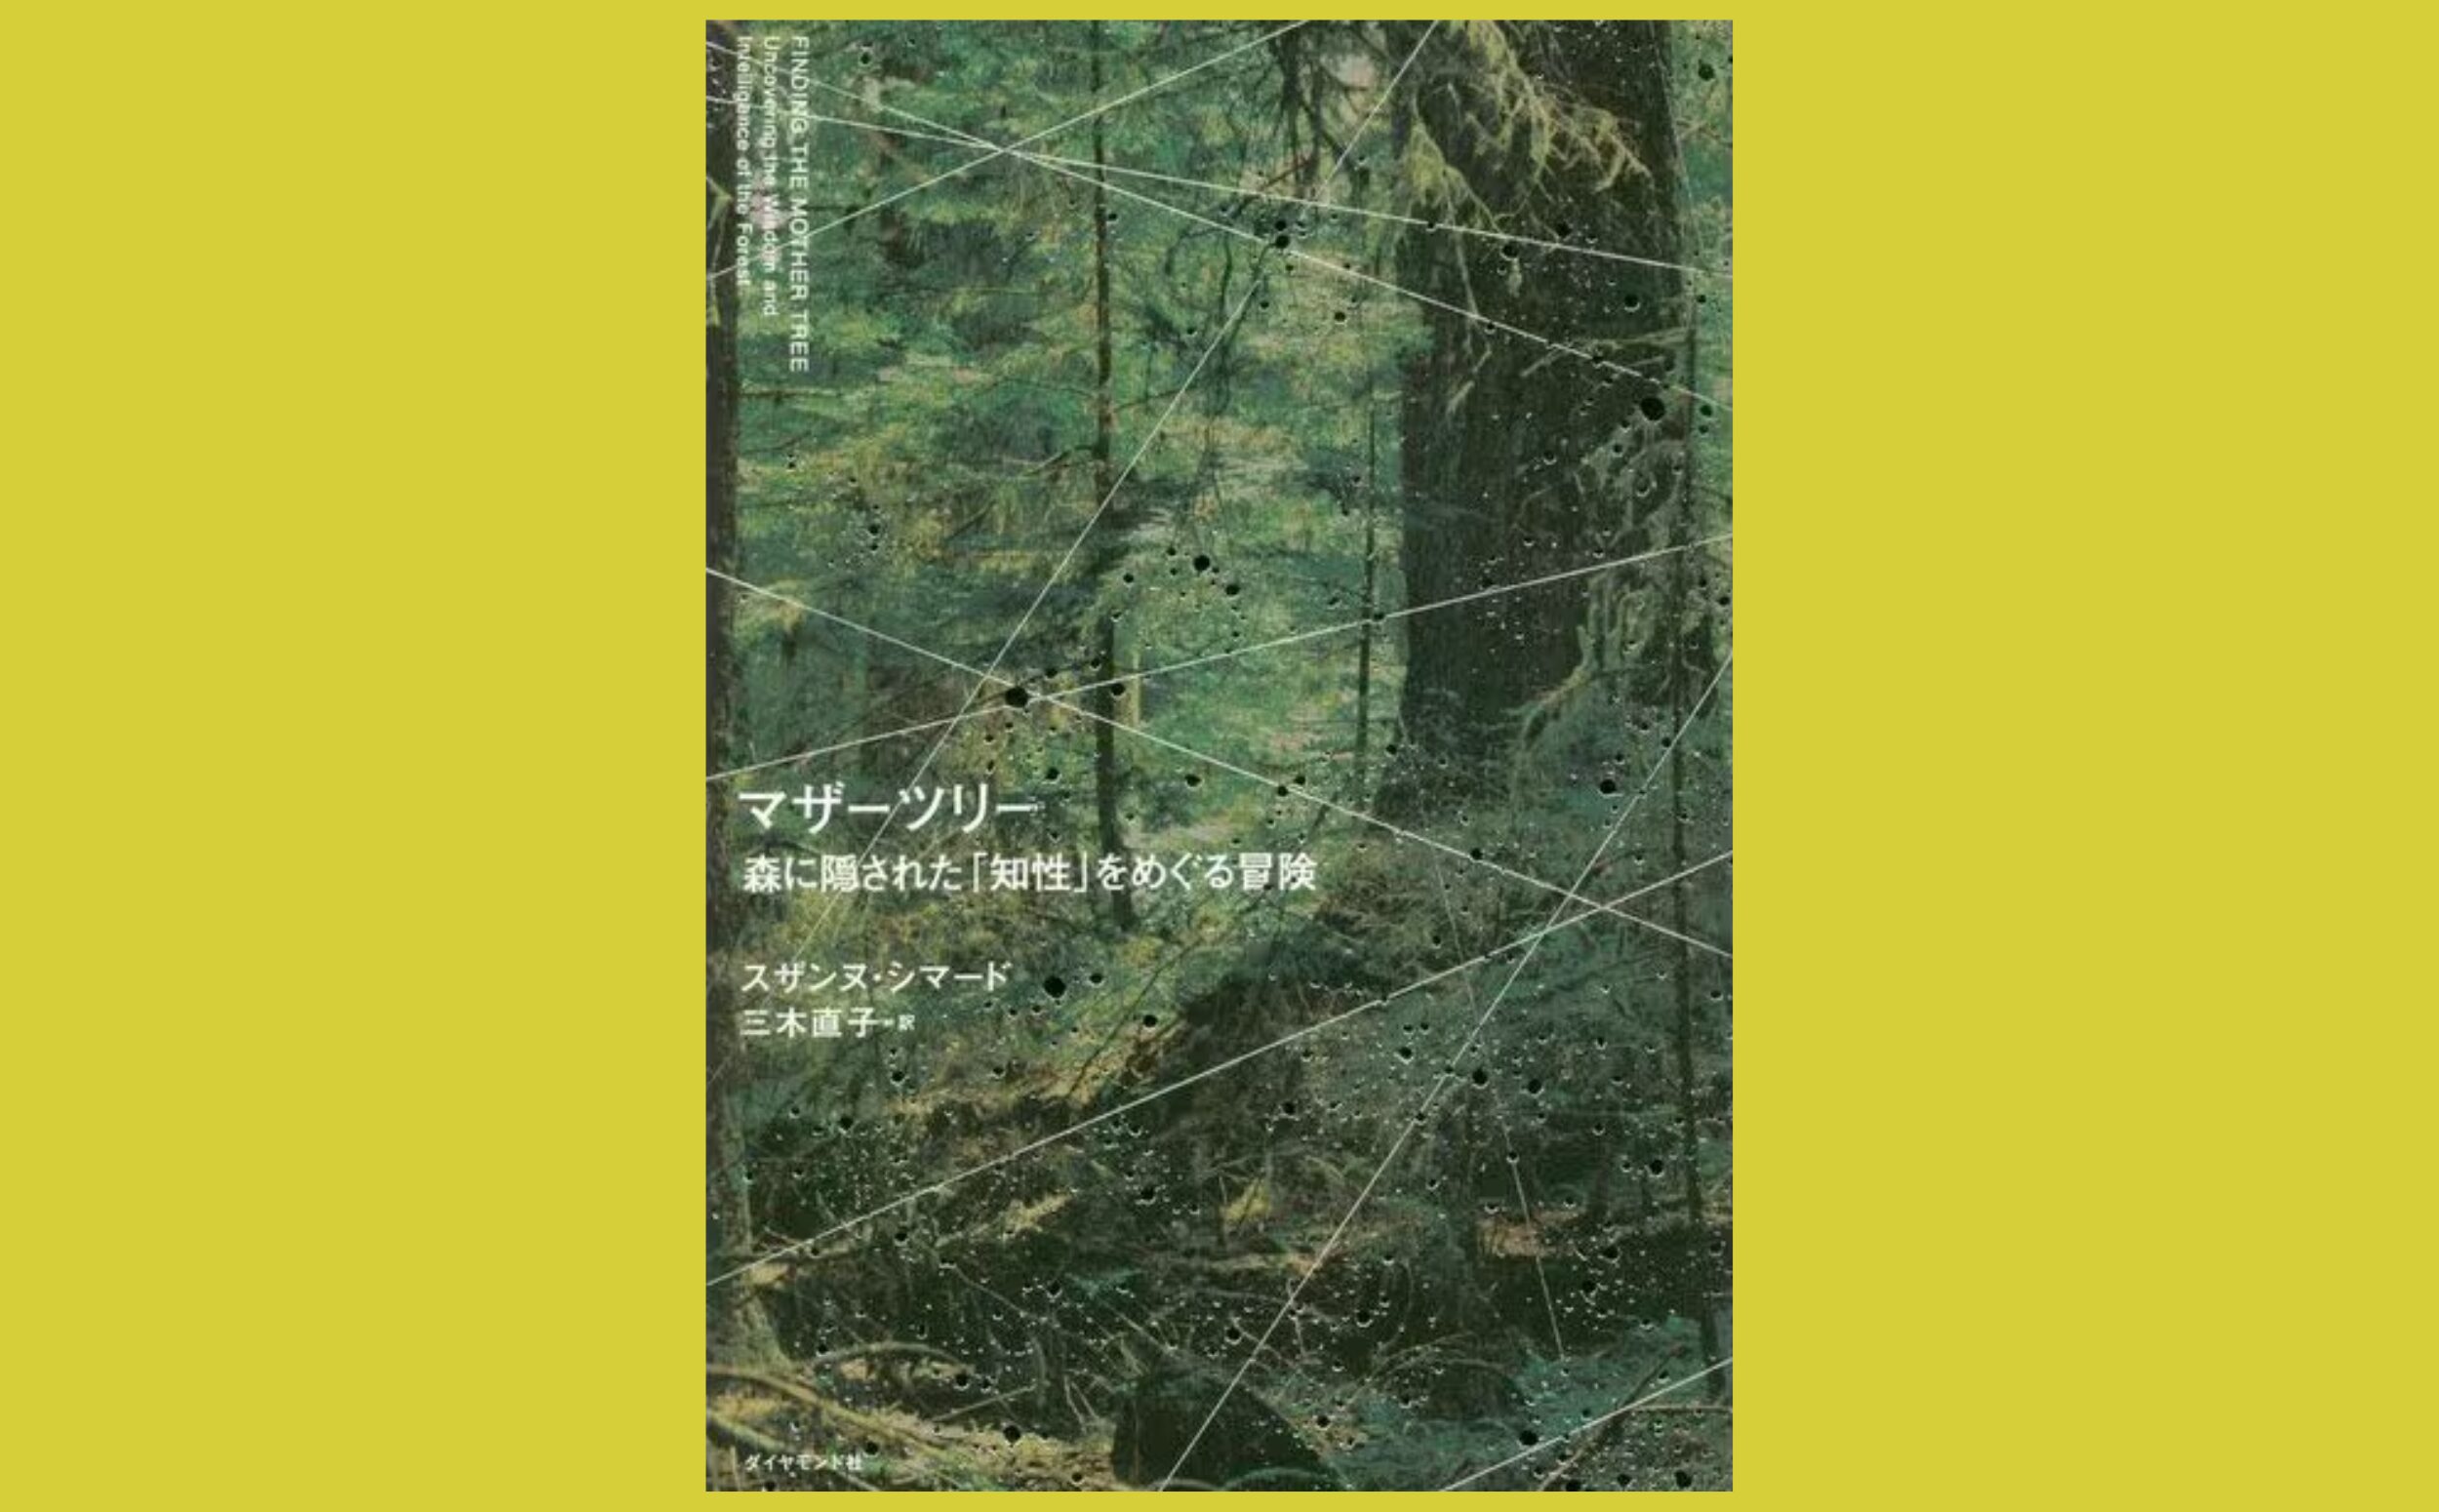 森で交わされる木々の会話　映画「アバター」の原案にもなった生態学的発見『マザーツリー』